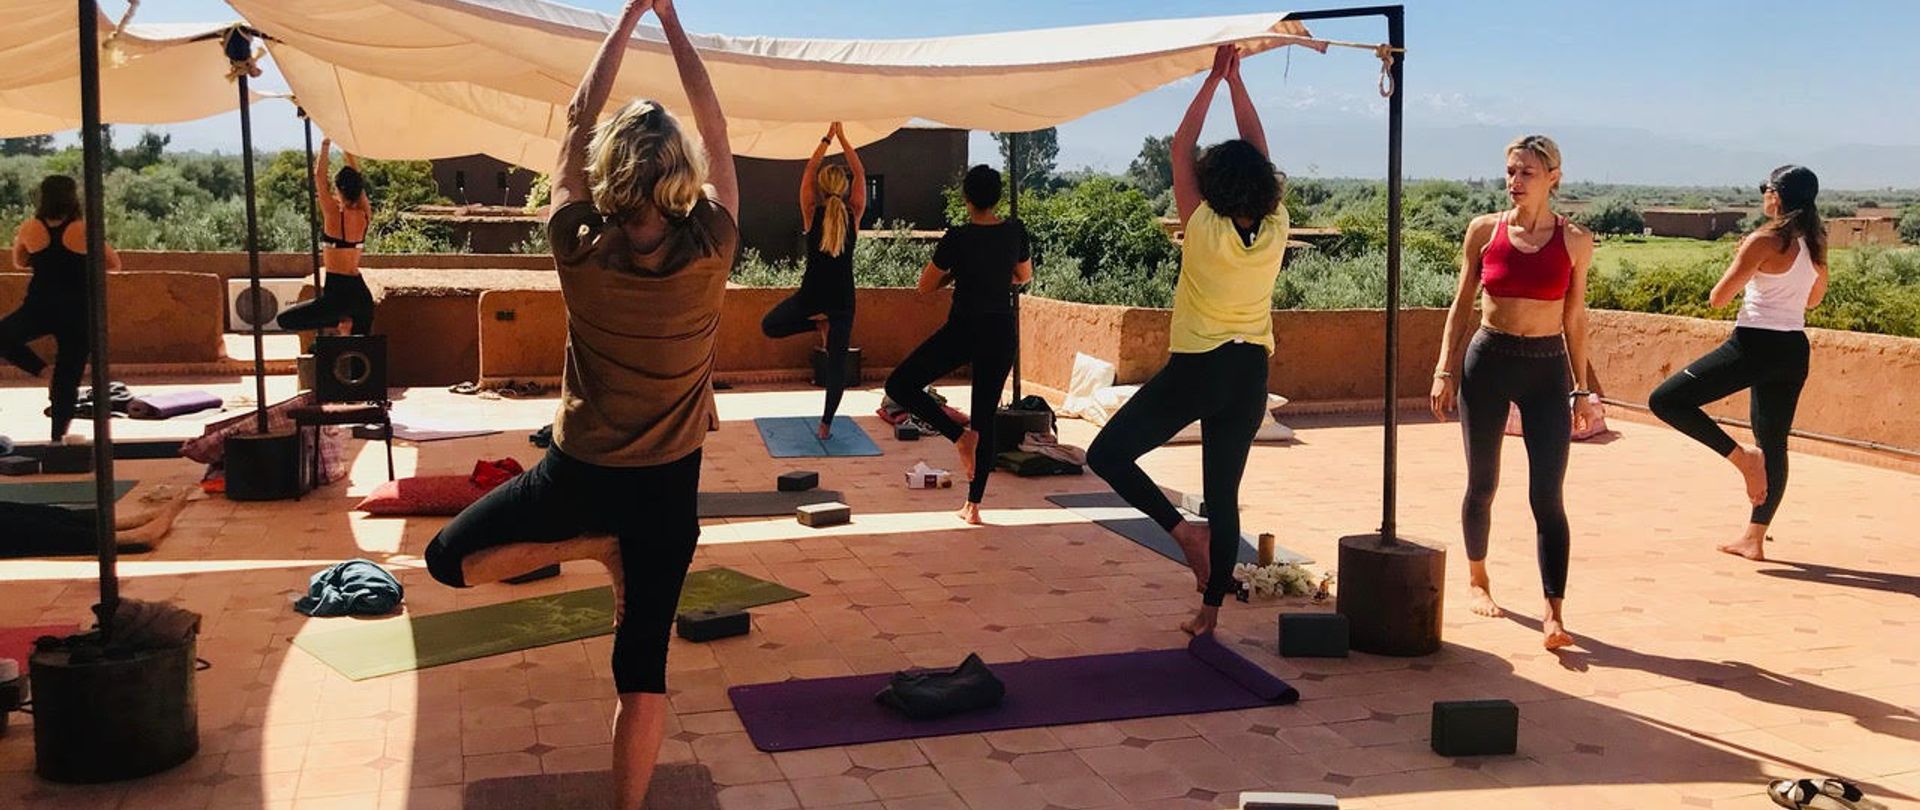 Retraite Yoga & Détox à Marrakech